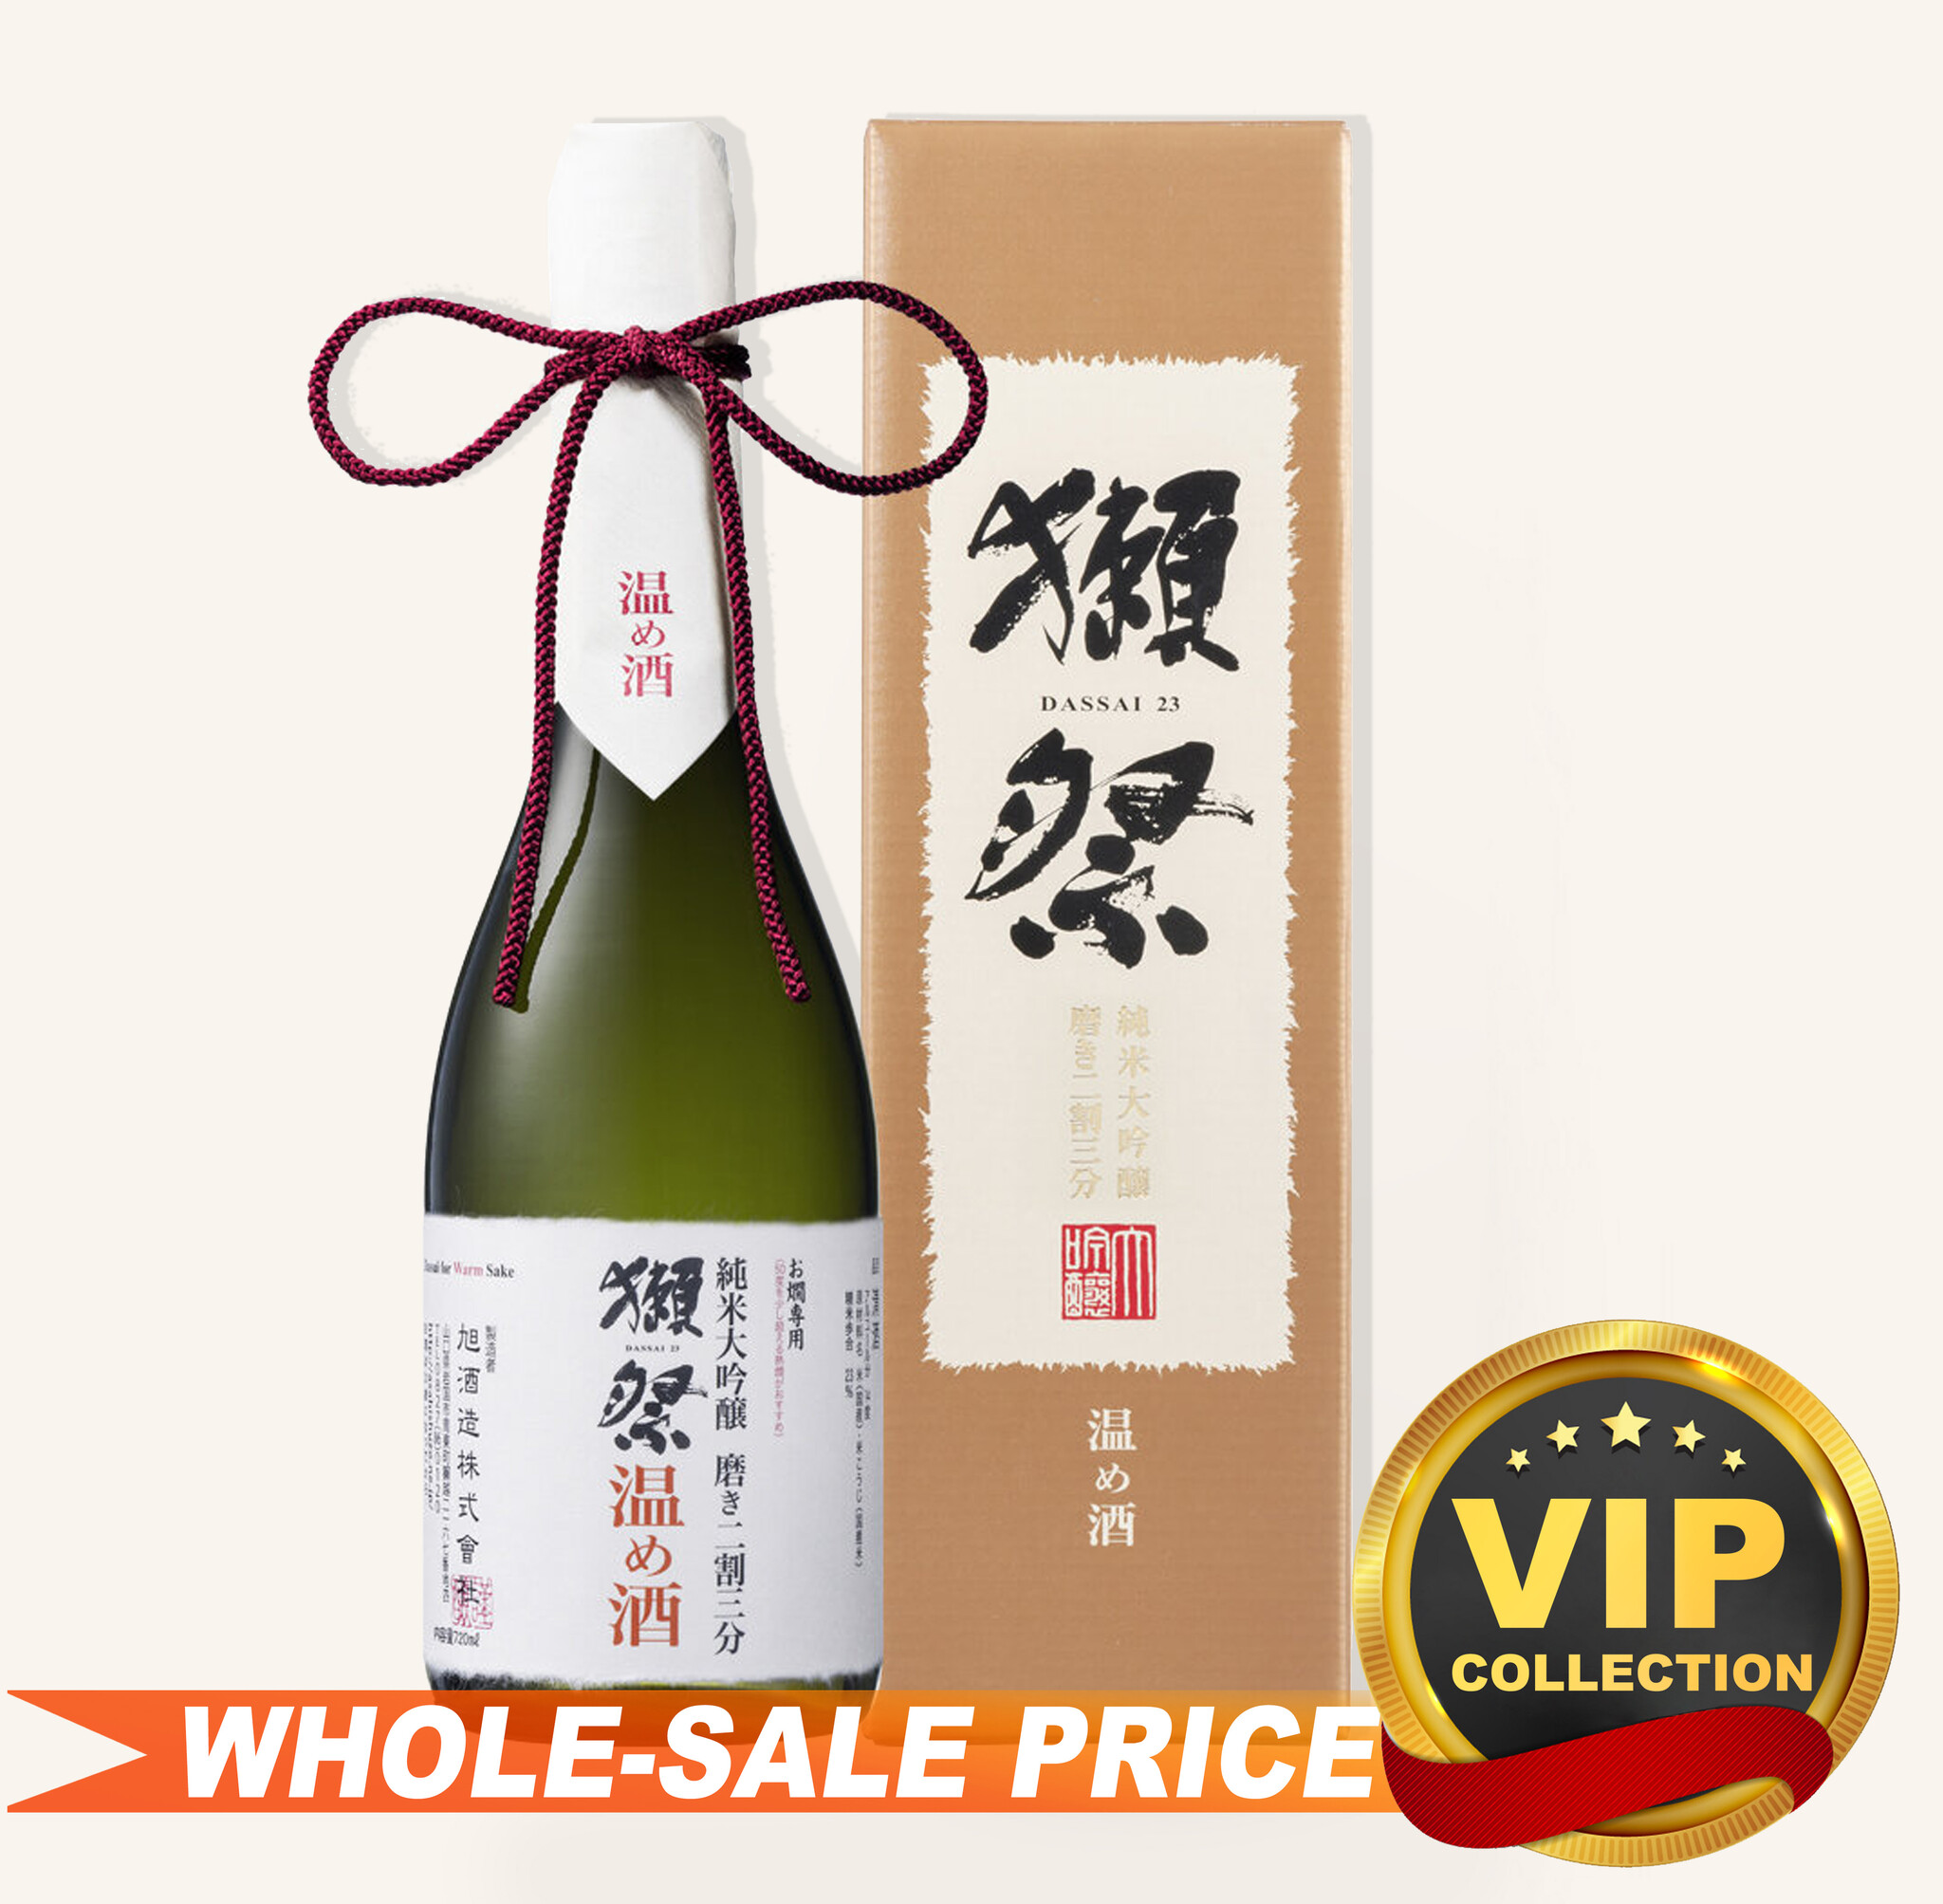 Dassai 23 Hayata Junmai Daiginjo Sake 獭祭早田纯米大吟釀720ml $189 